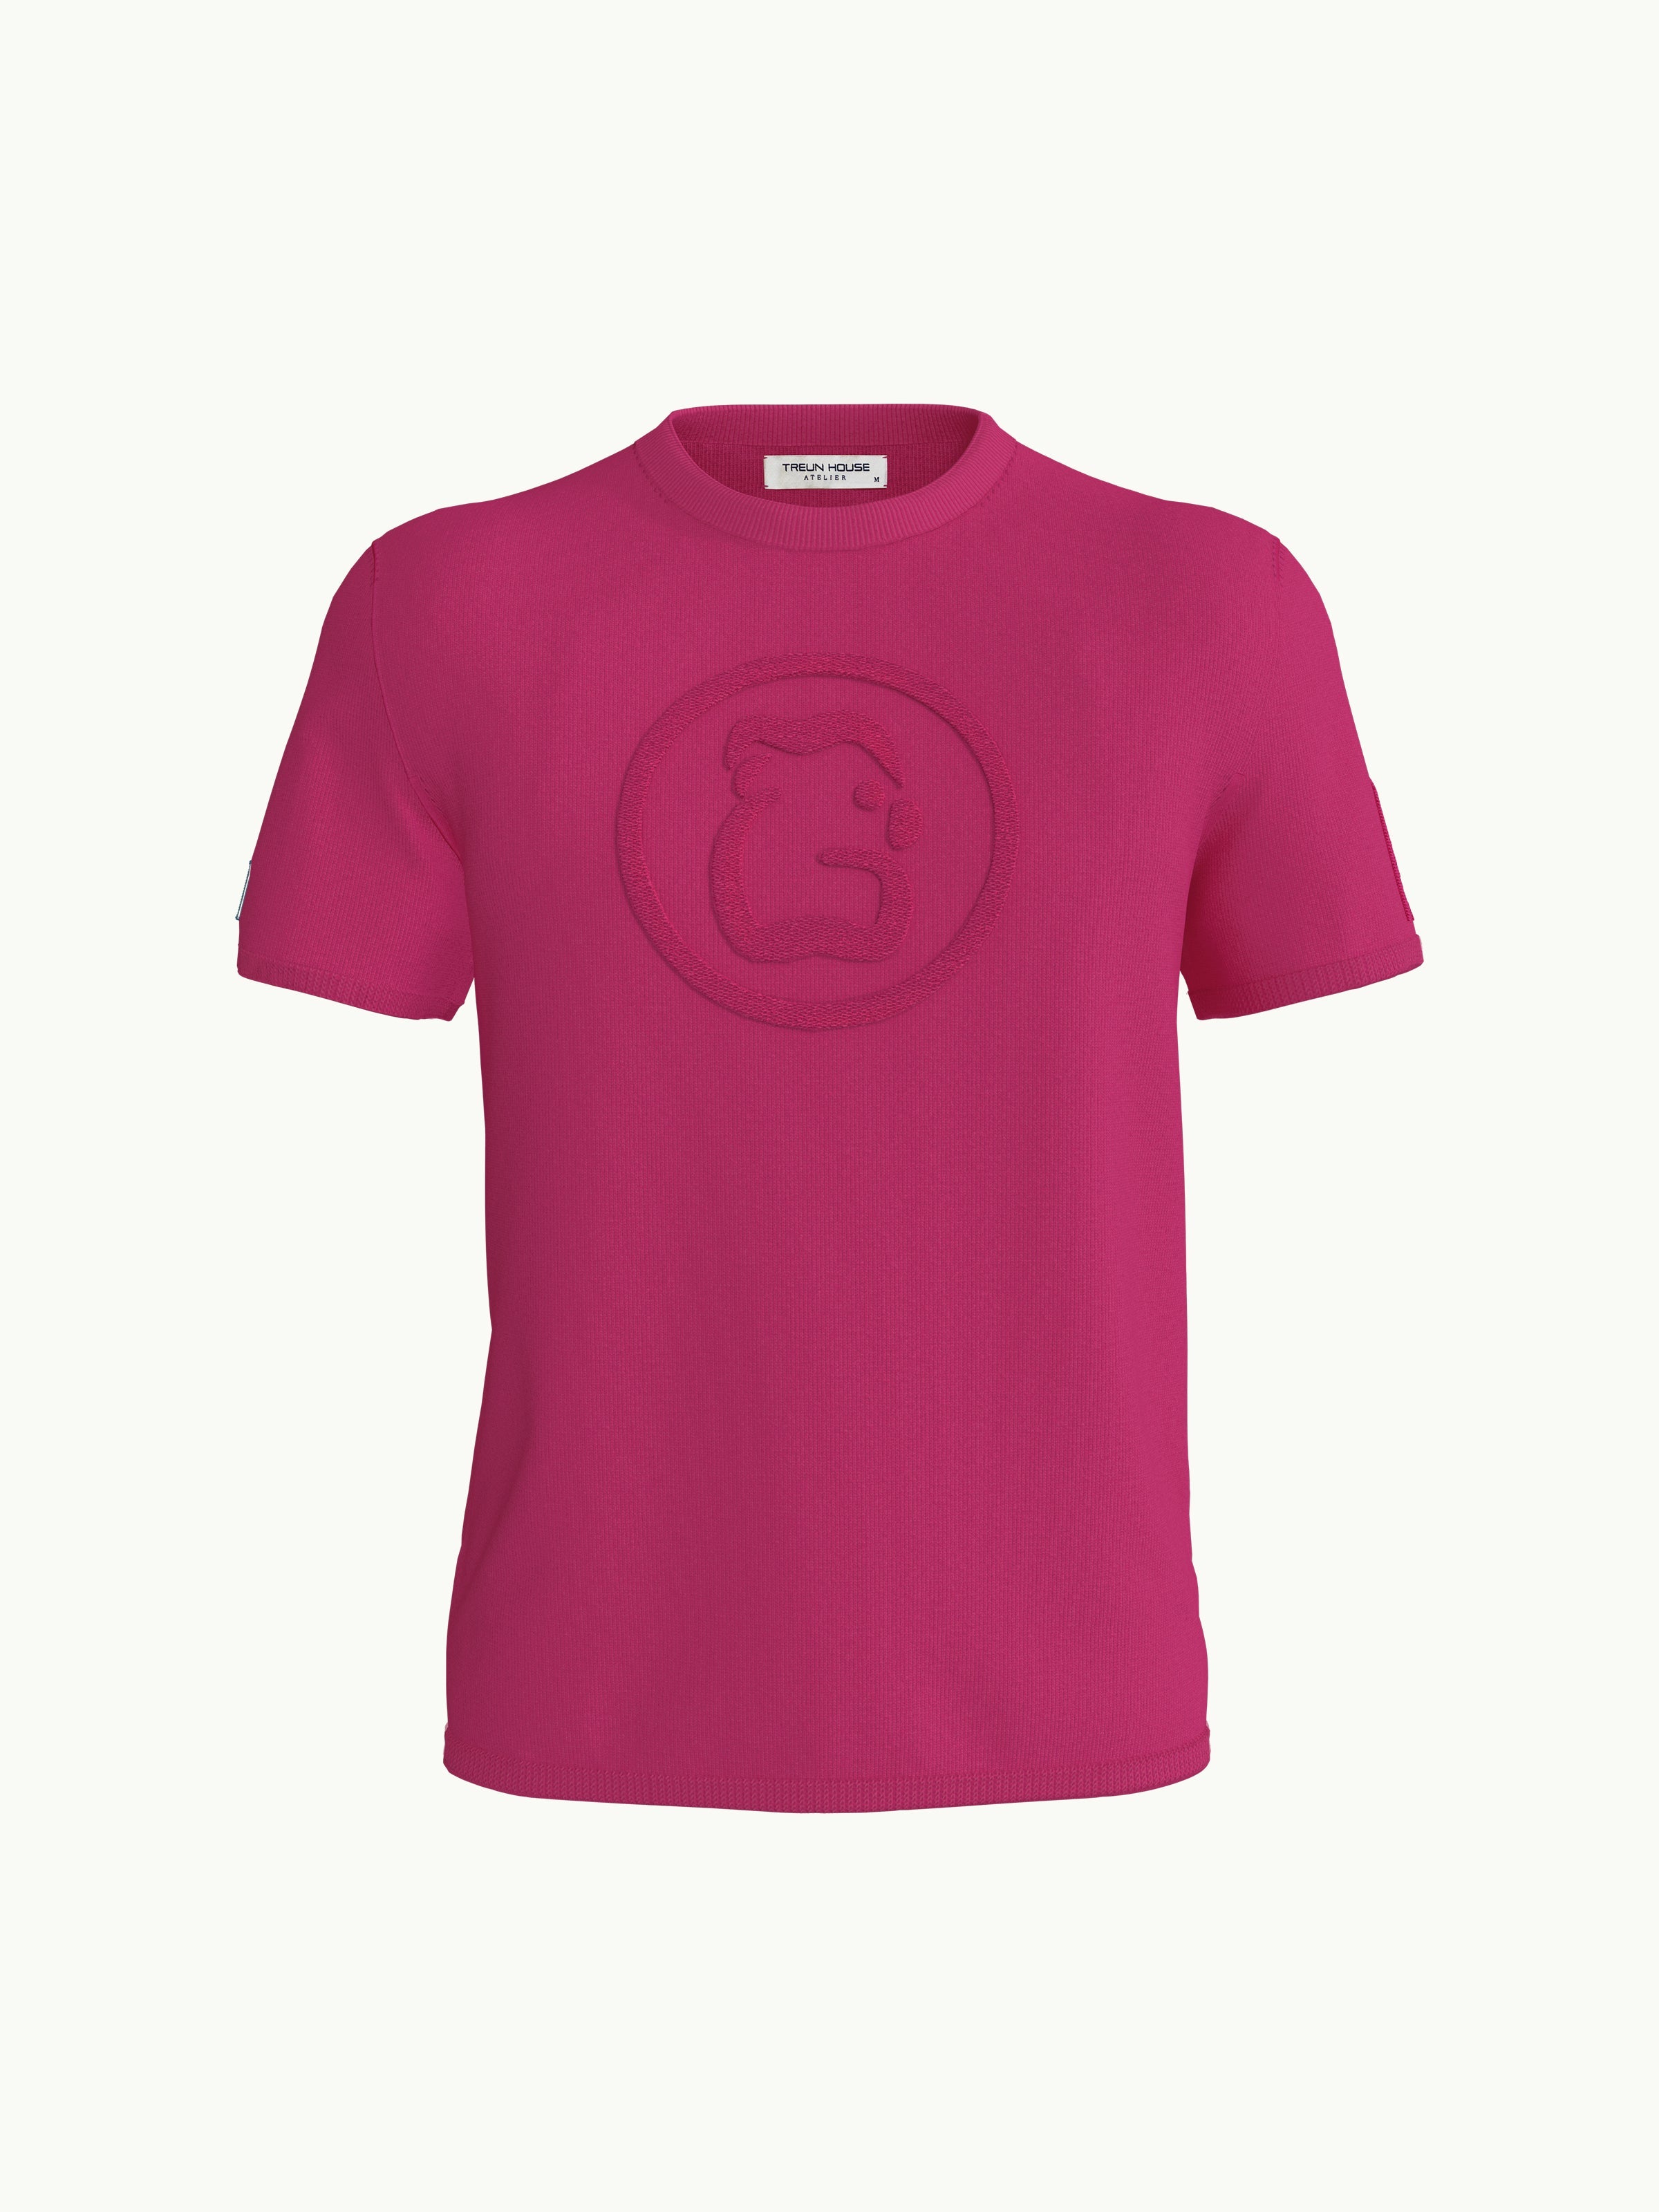 Women's T-Shirt - Butterfly Pink